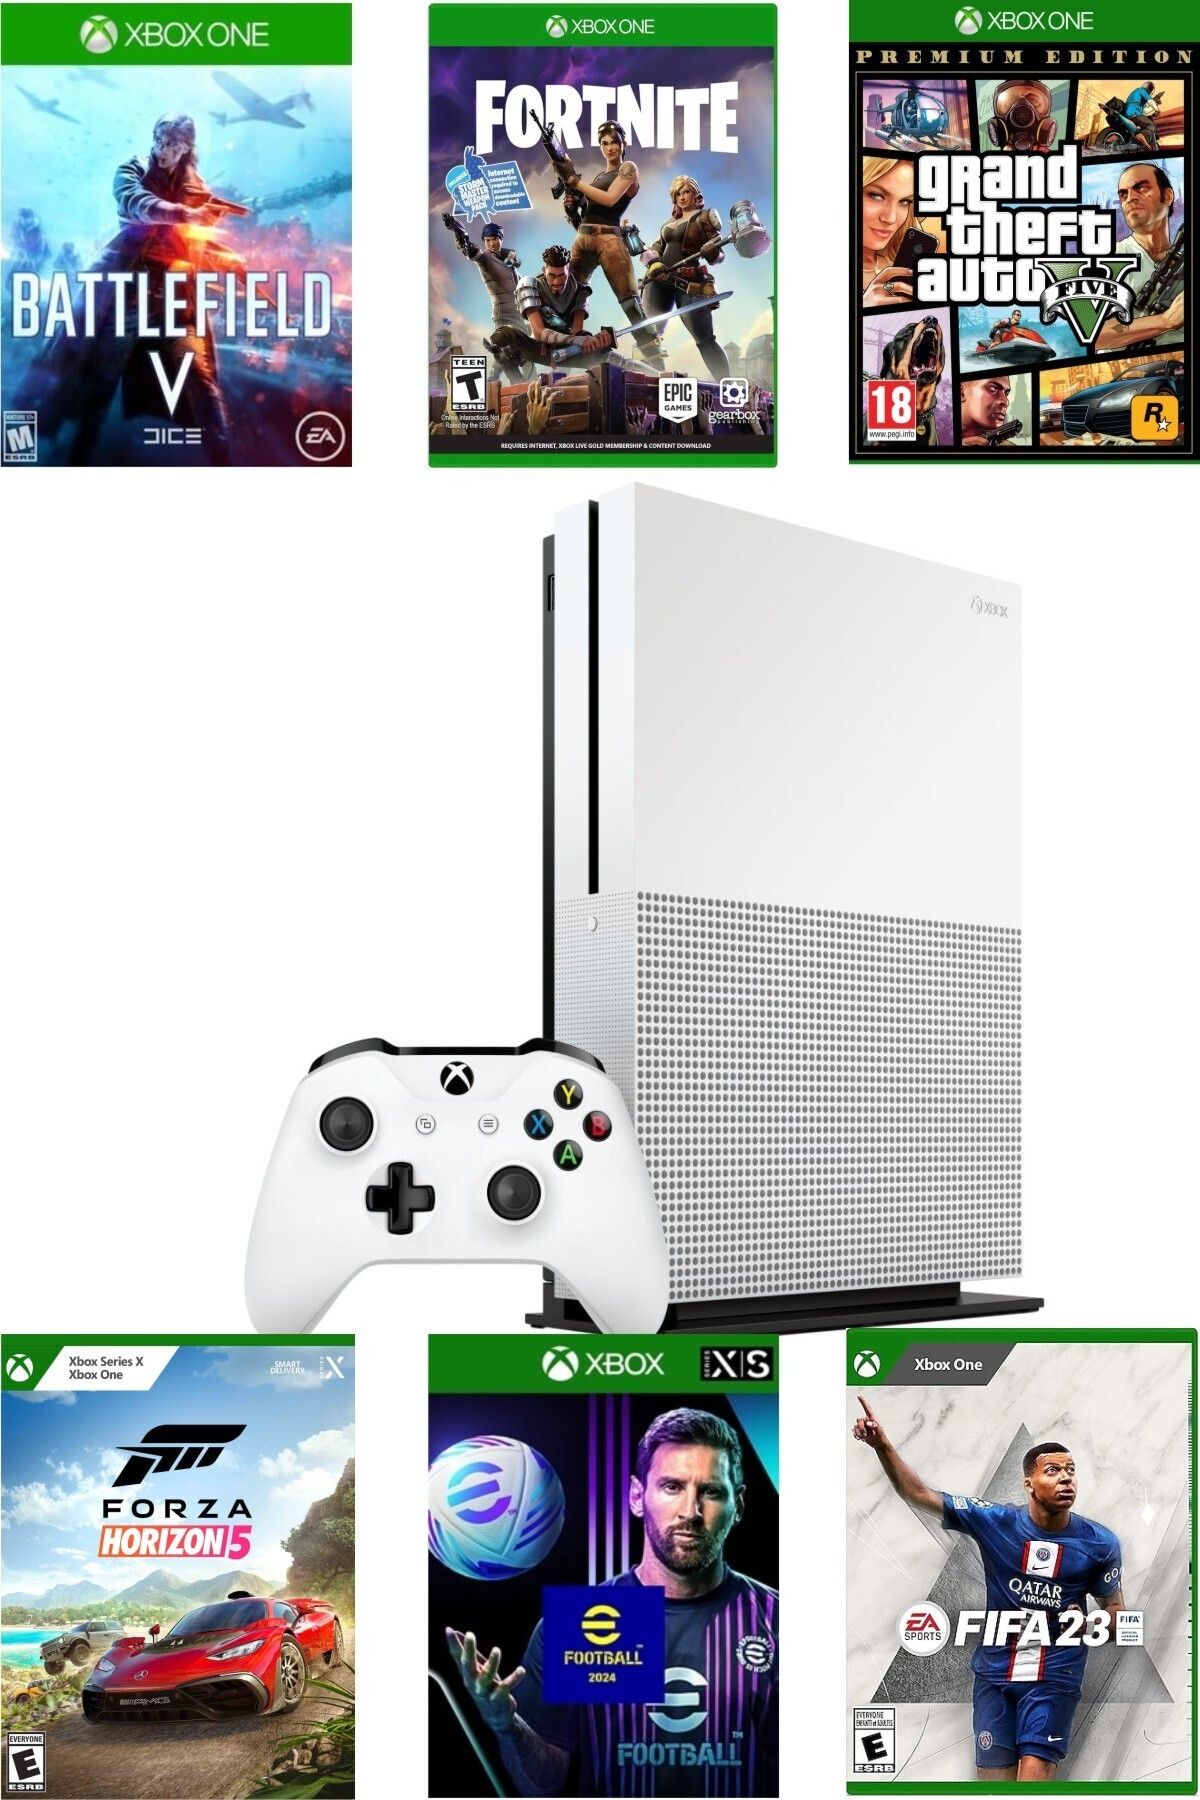 Microsoft XBOX One S 1 TB - Teşhir Cihazı 6 Ay Garantili - GTA 5, FIFA 23 Dahil 15 Dijital Oyun Hediyeli